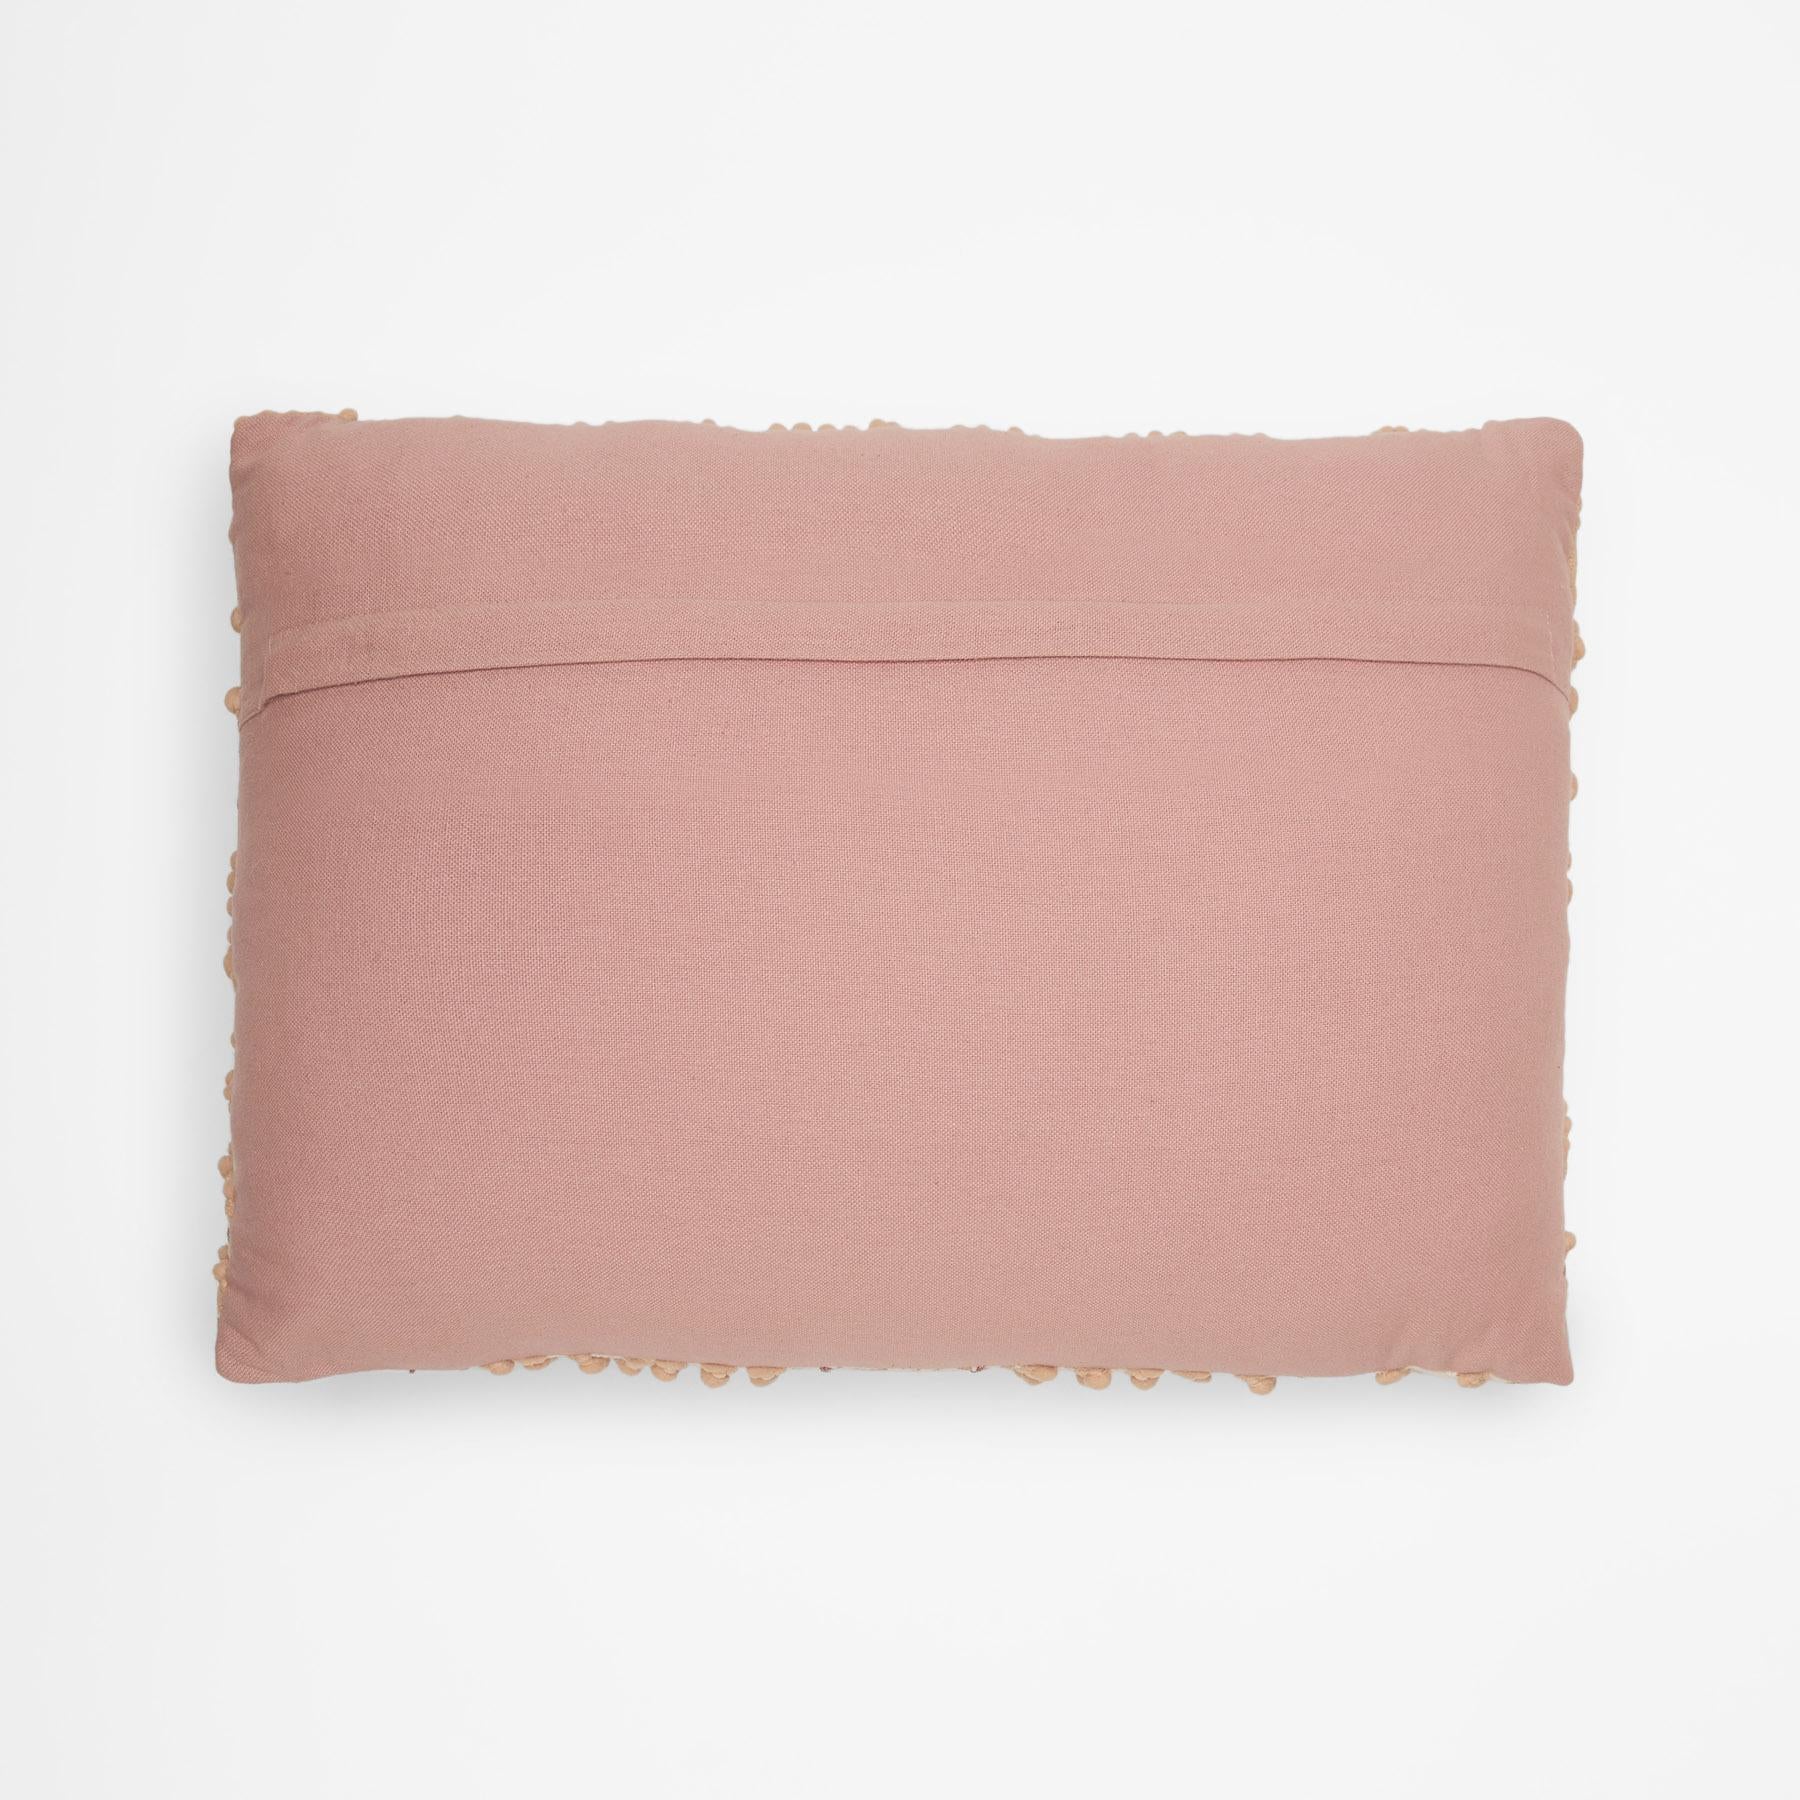 Nude Pom Pom Rectangle Cushion Cover